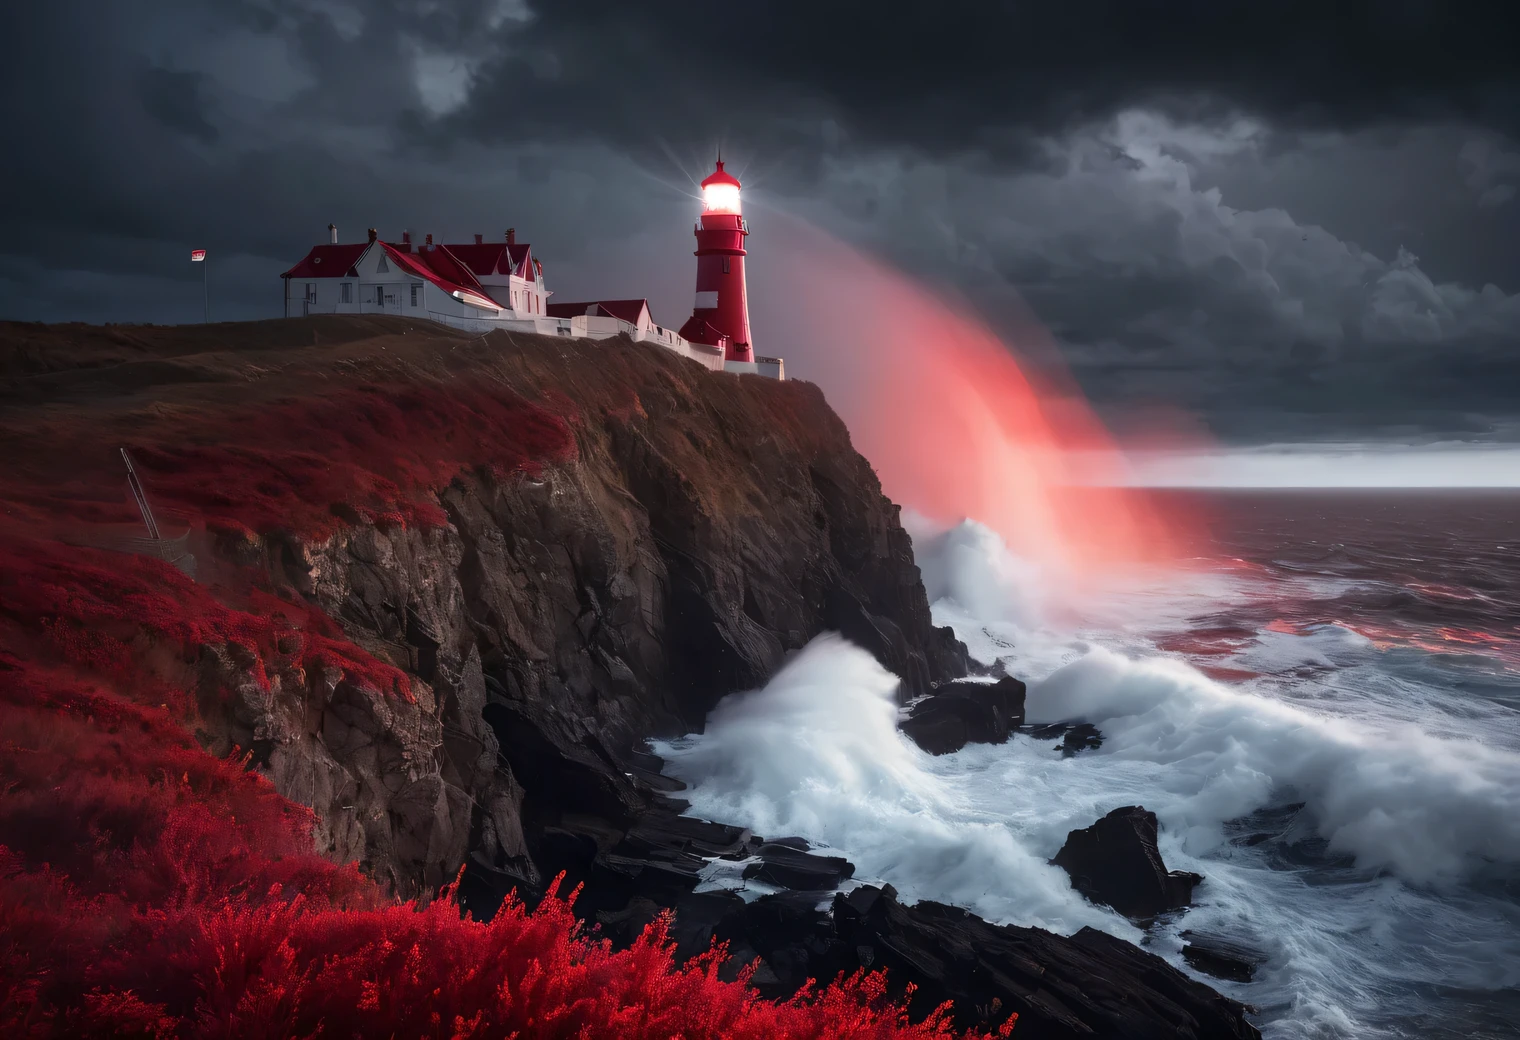 붉은 예술, 붉은 톤의 사실적인 그림., (안개:1.2), (the wind carries 바다 spray and foam:1.7), the dark 폭풍y sky is illuminated by the red light of the lighthouse, 이중 노출 효과, (절벽 끝에 있는 등대 1개:1.5개 빨간색으로 빛남:1.3505), 바다, 강한 (폭풍:1.3050), 폭풍y wind:1.250), 빨간색 백라이트, (광선 추적:1.2), (틴들 효과:1.4055 등대 빔:1.4), 높은 디테일, 폭풍 haze, 텍스처 스무딩, 윤곽선 흐림, 빨간색 팔레트